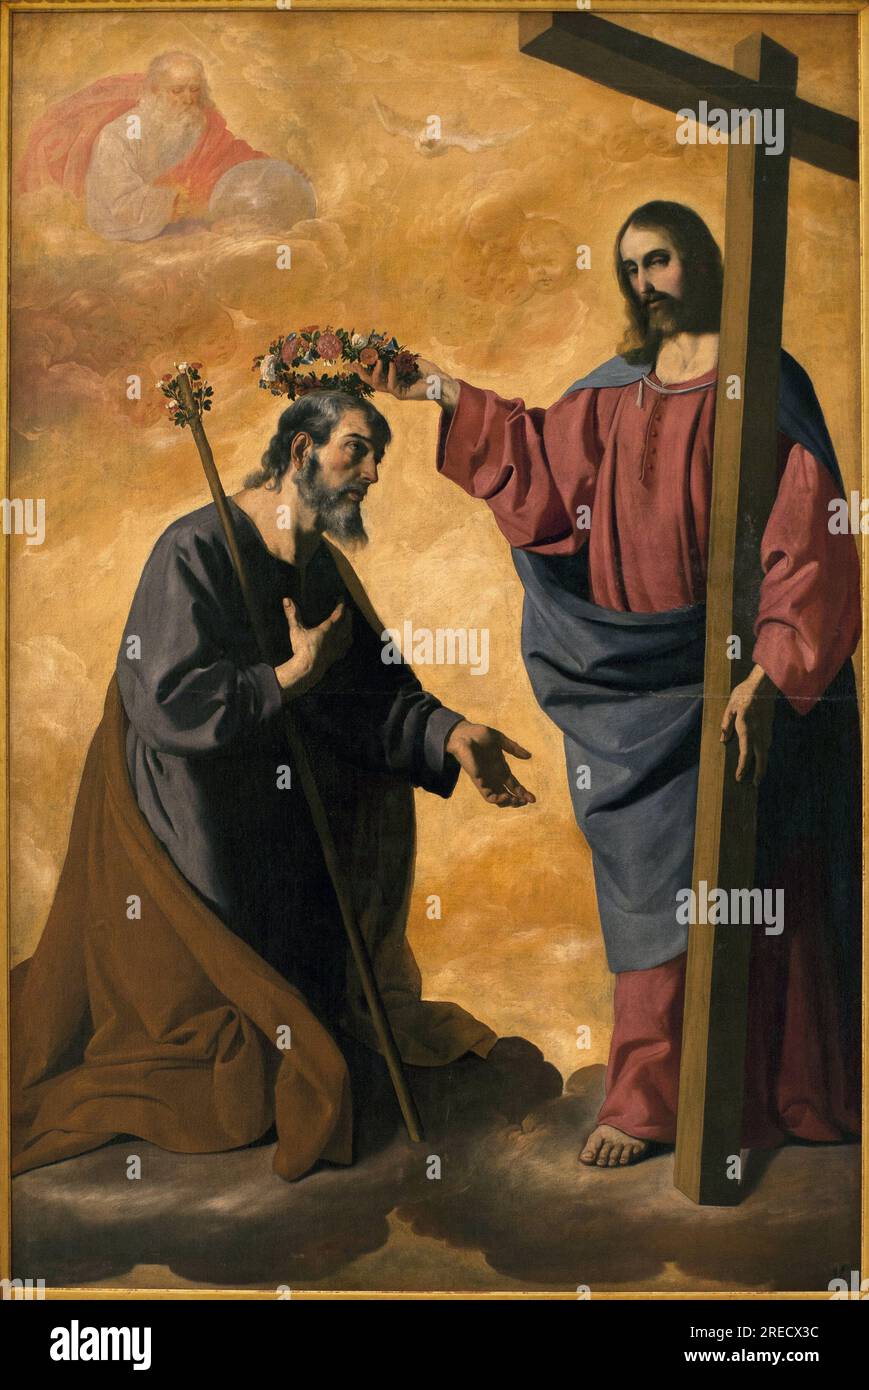 Le Christ couronant Saint Joseph. Peinture de Francisco de Zurbaran (1598-1664), huile sur toile, vers 1640. Musee des Beaux Arts de Sevillle, Espagne. Stock Photo